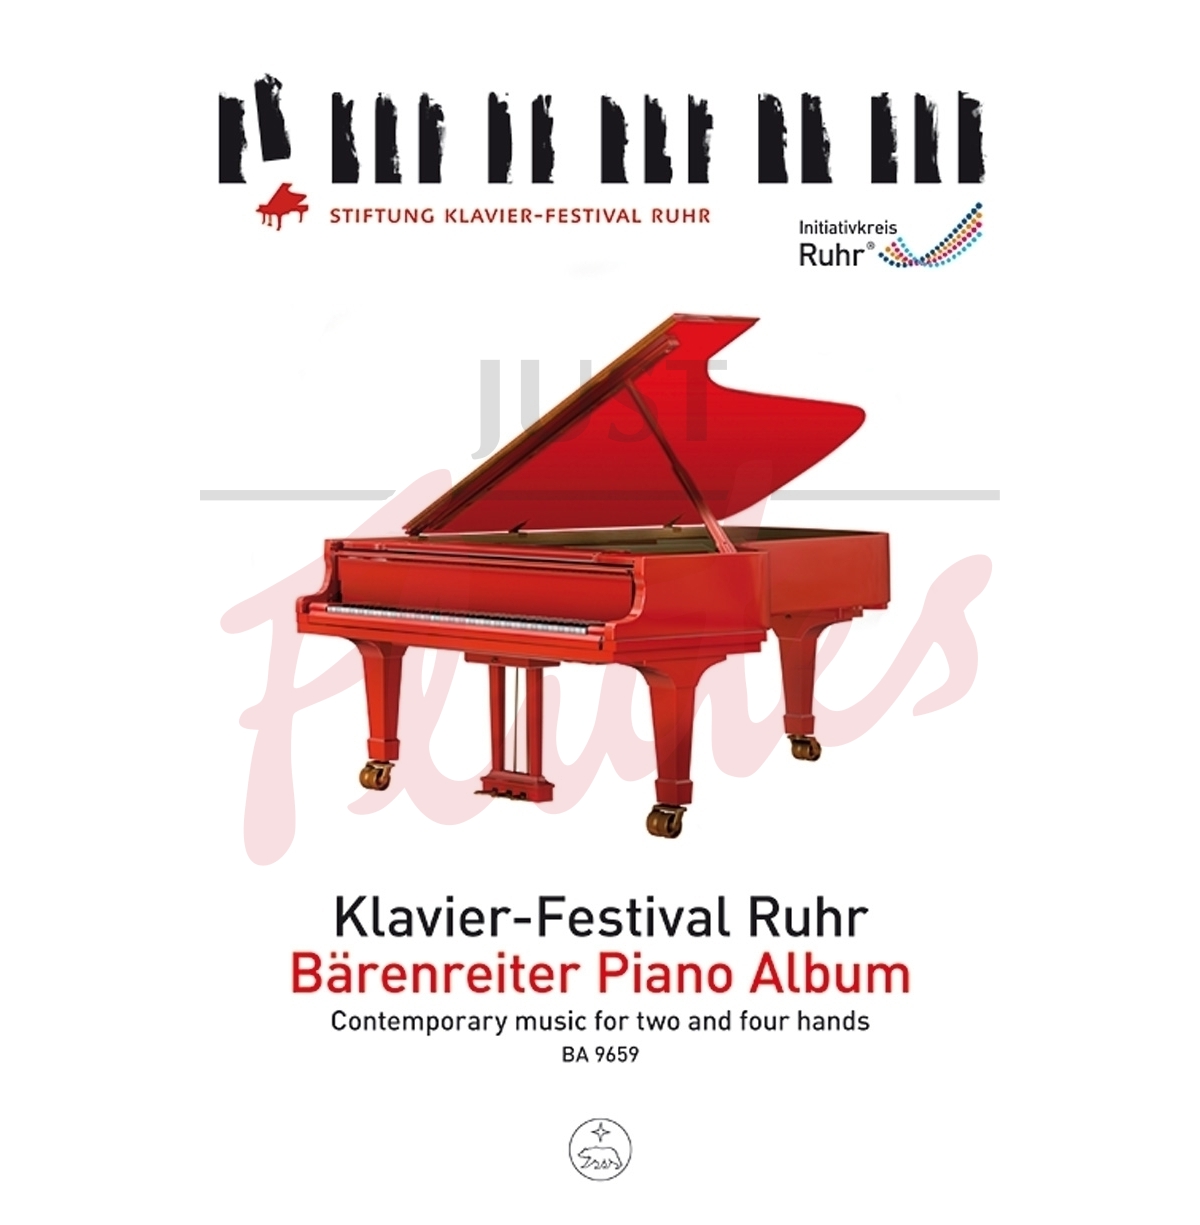 Barenreiter Piano Album: Contemporary Music for Two and Four Hands